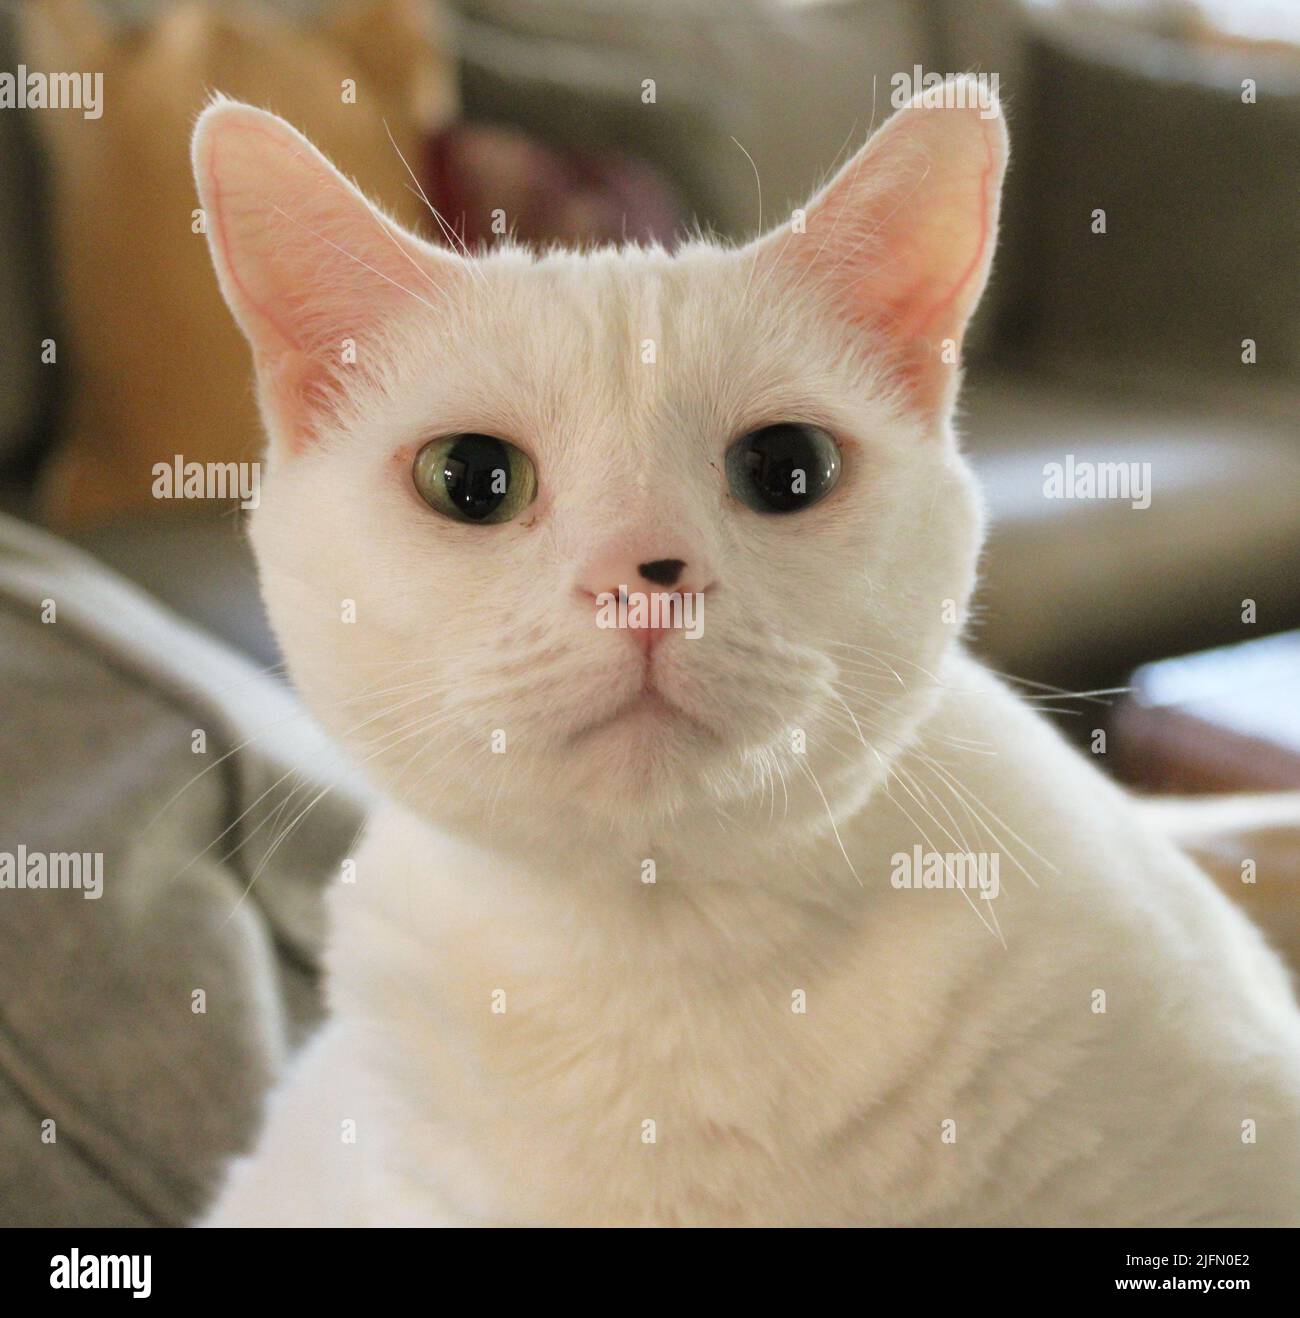 Un chat domestique blanc avec deux yeux de couleur différente Banque D'Images